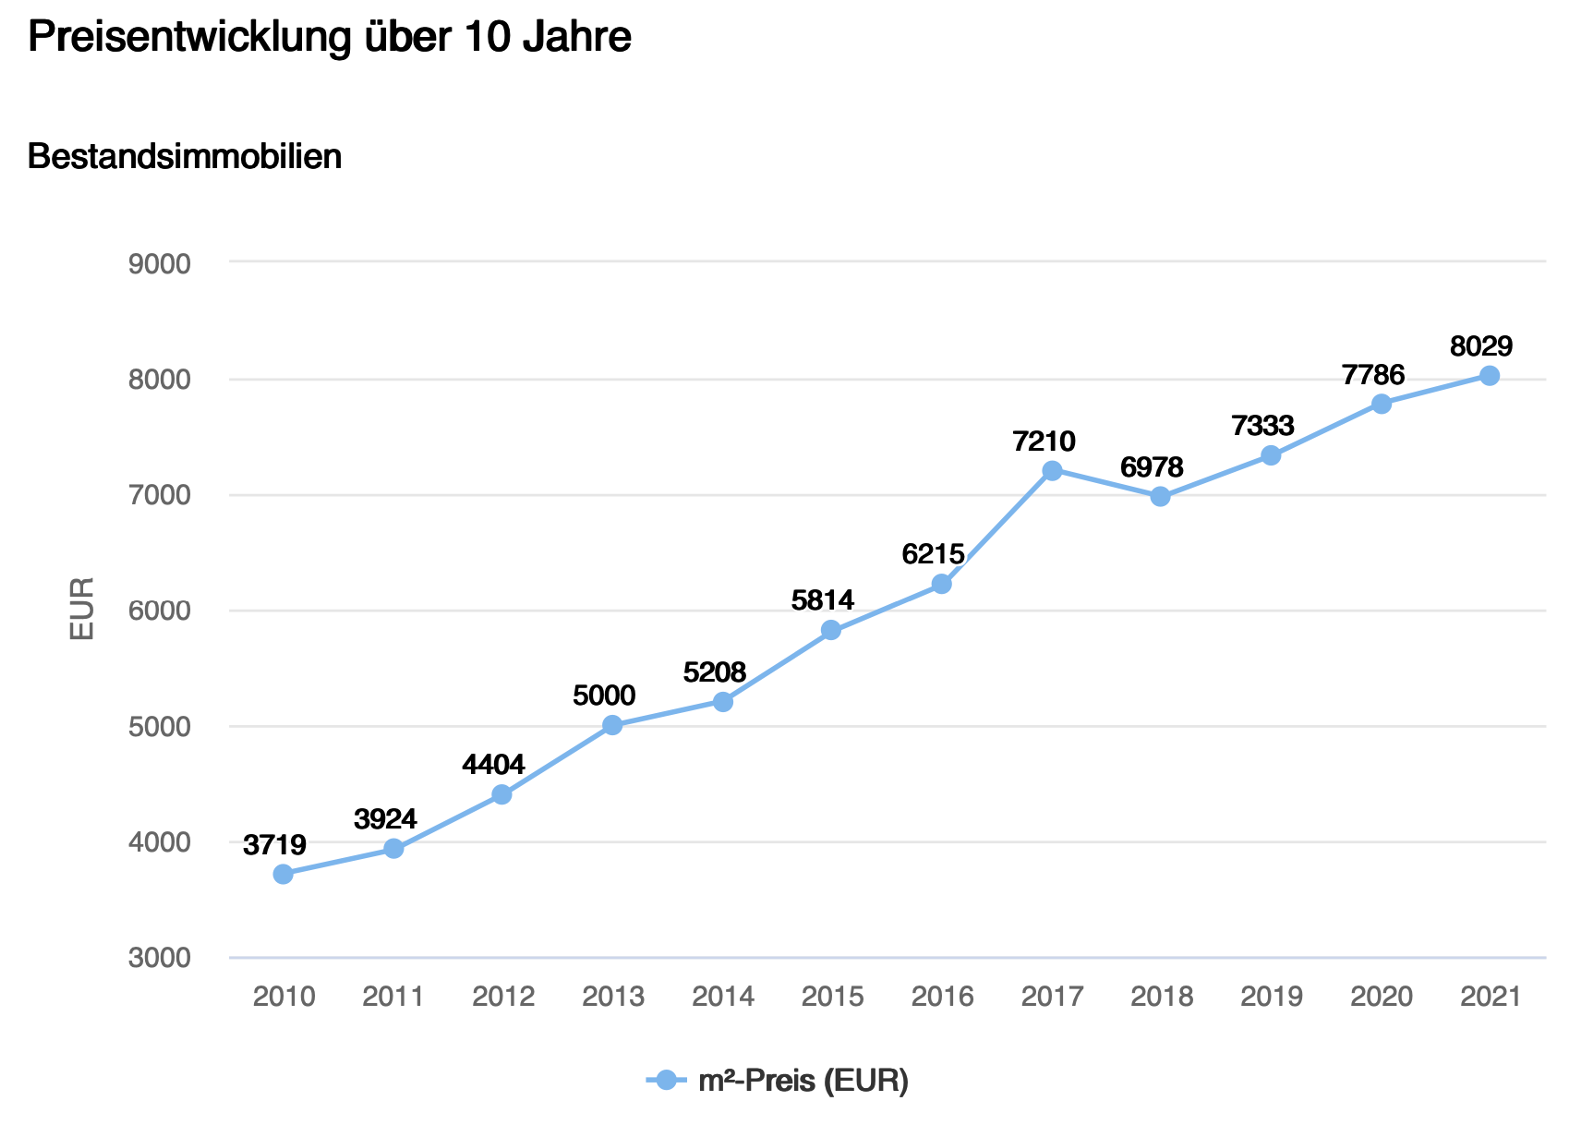 Preisentwicklung Bestandsimmobilien Starnberg 10 Jahre